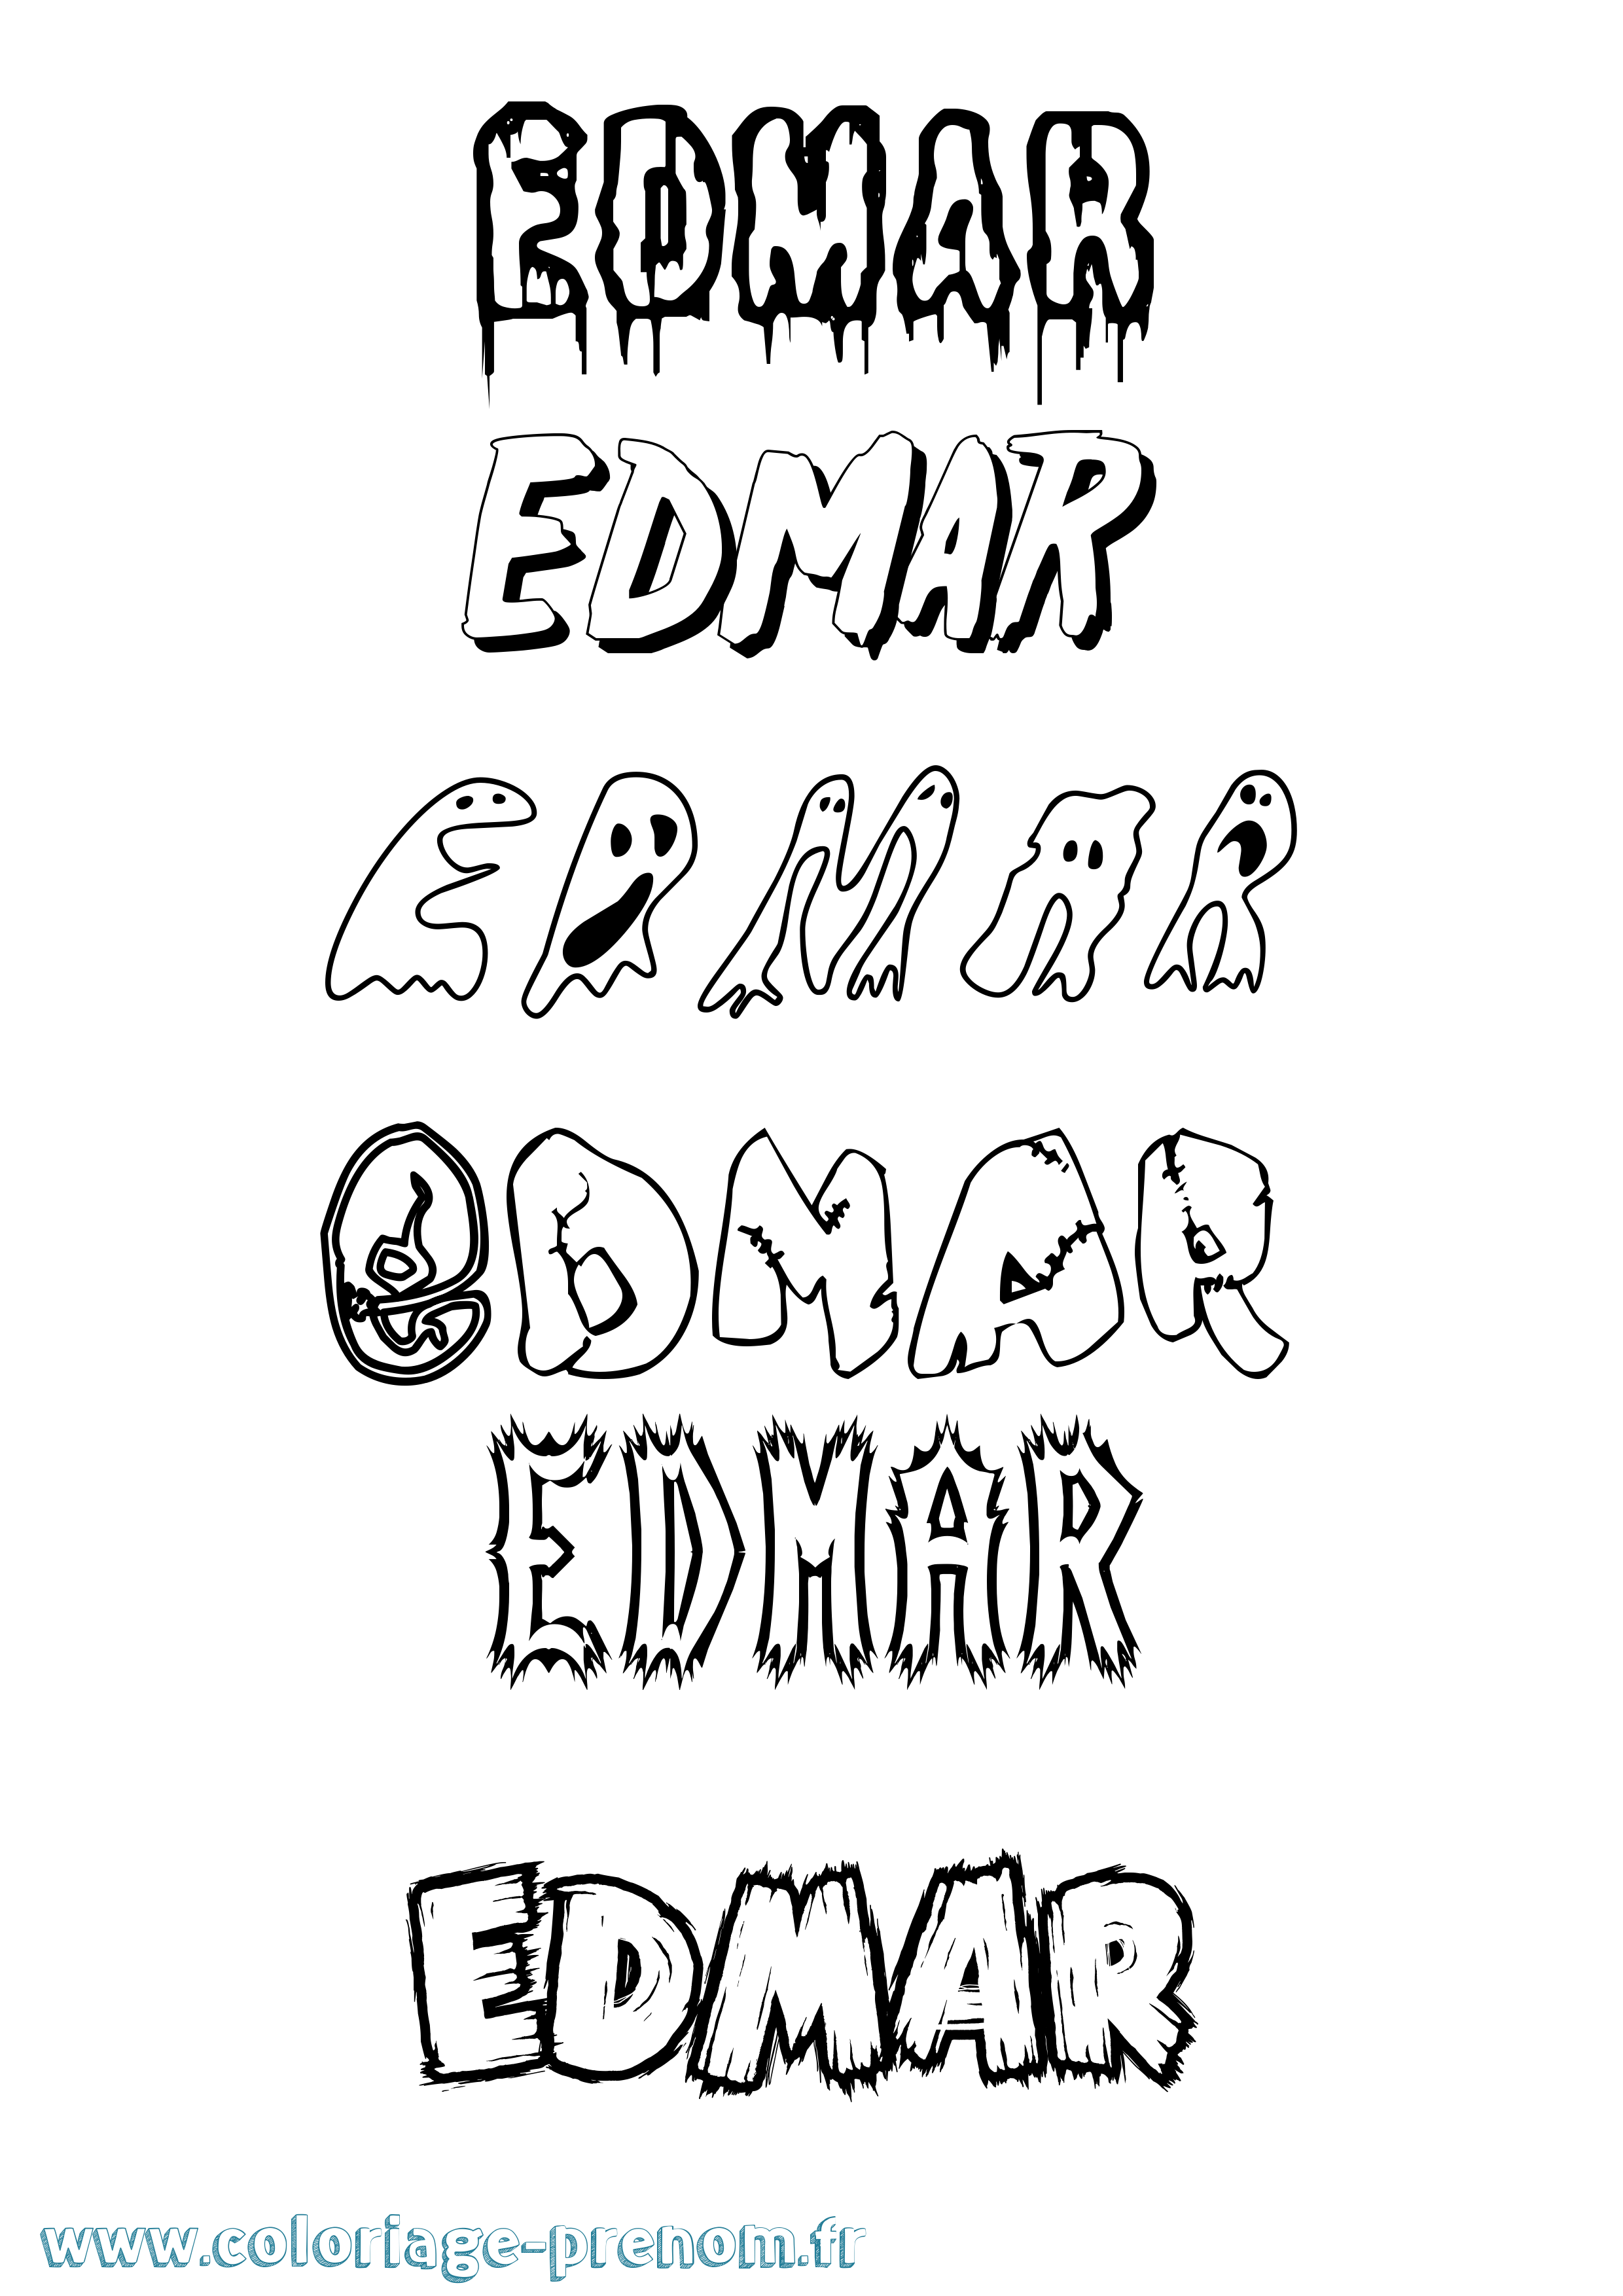 Coloriage prénom Edmar Frisson